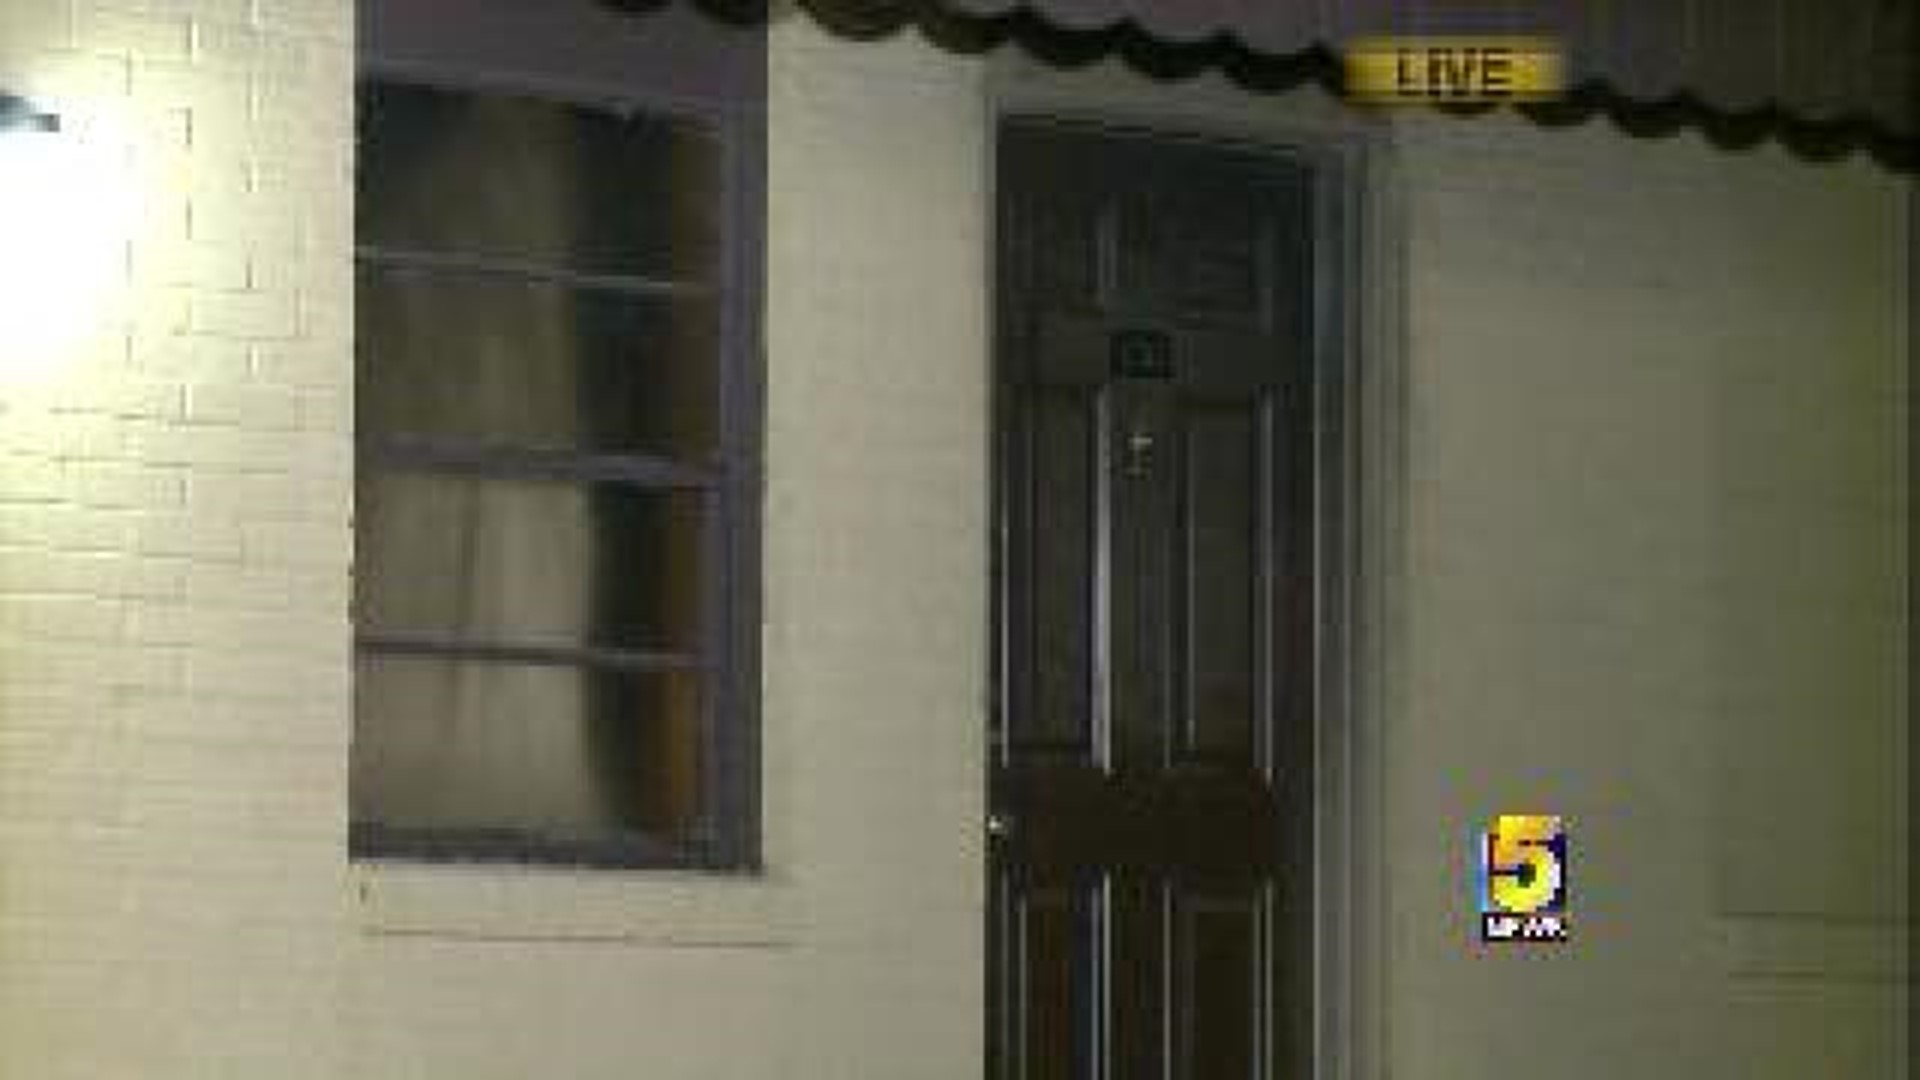 Man Dies In Motel Fire